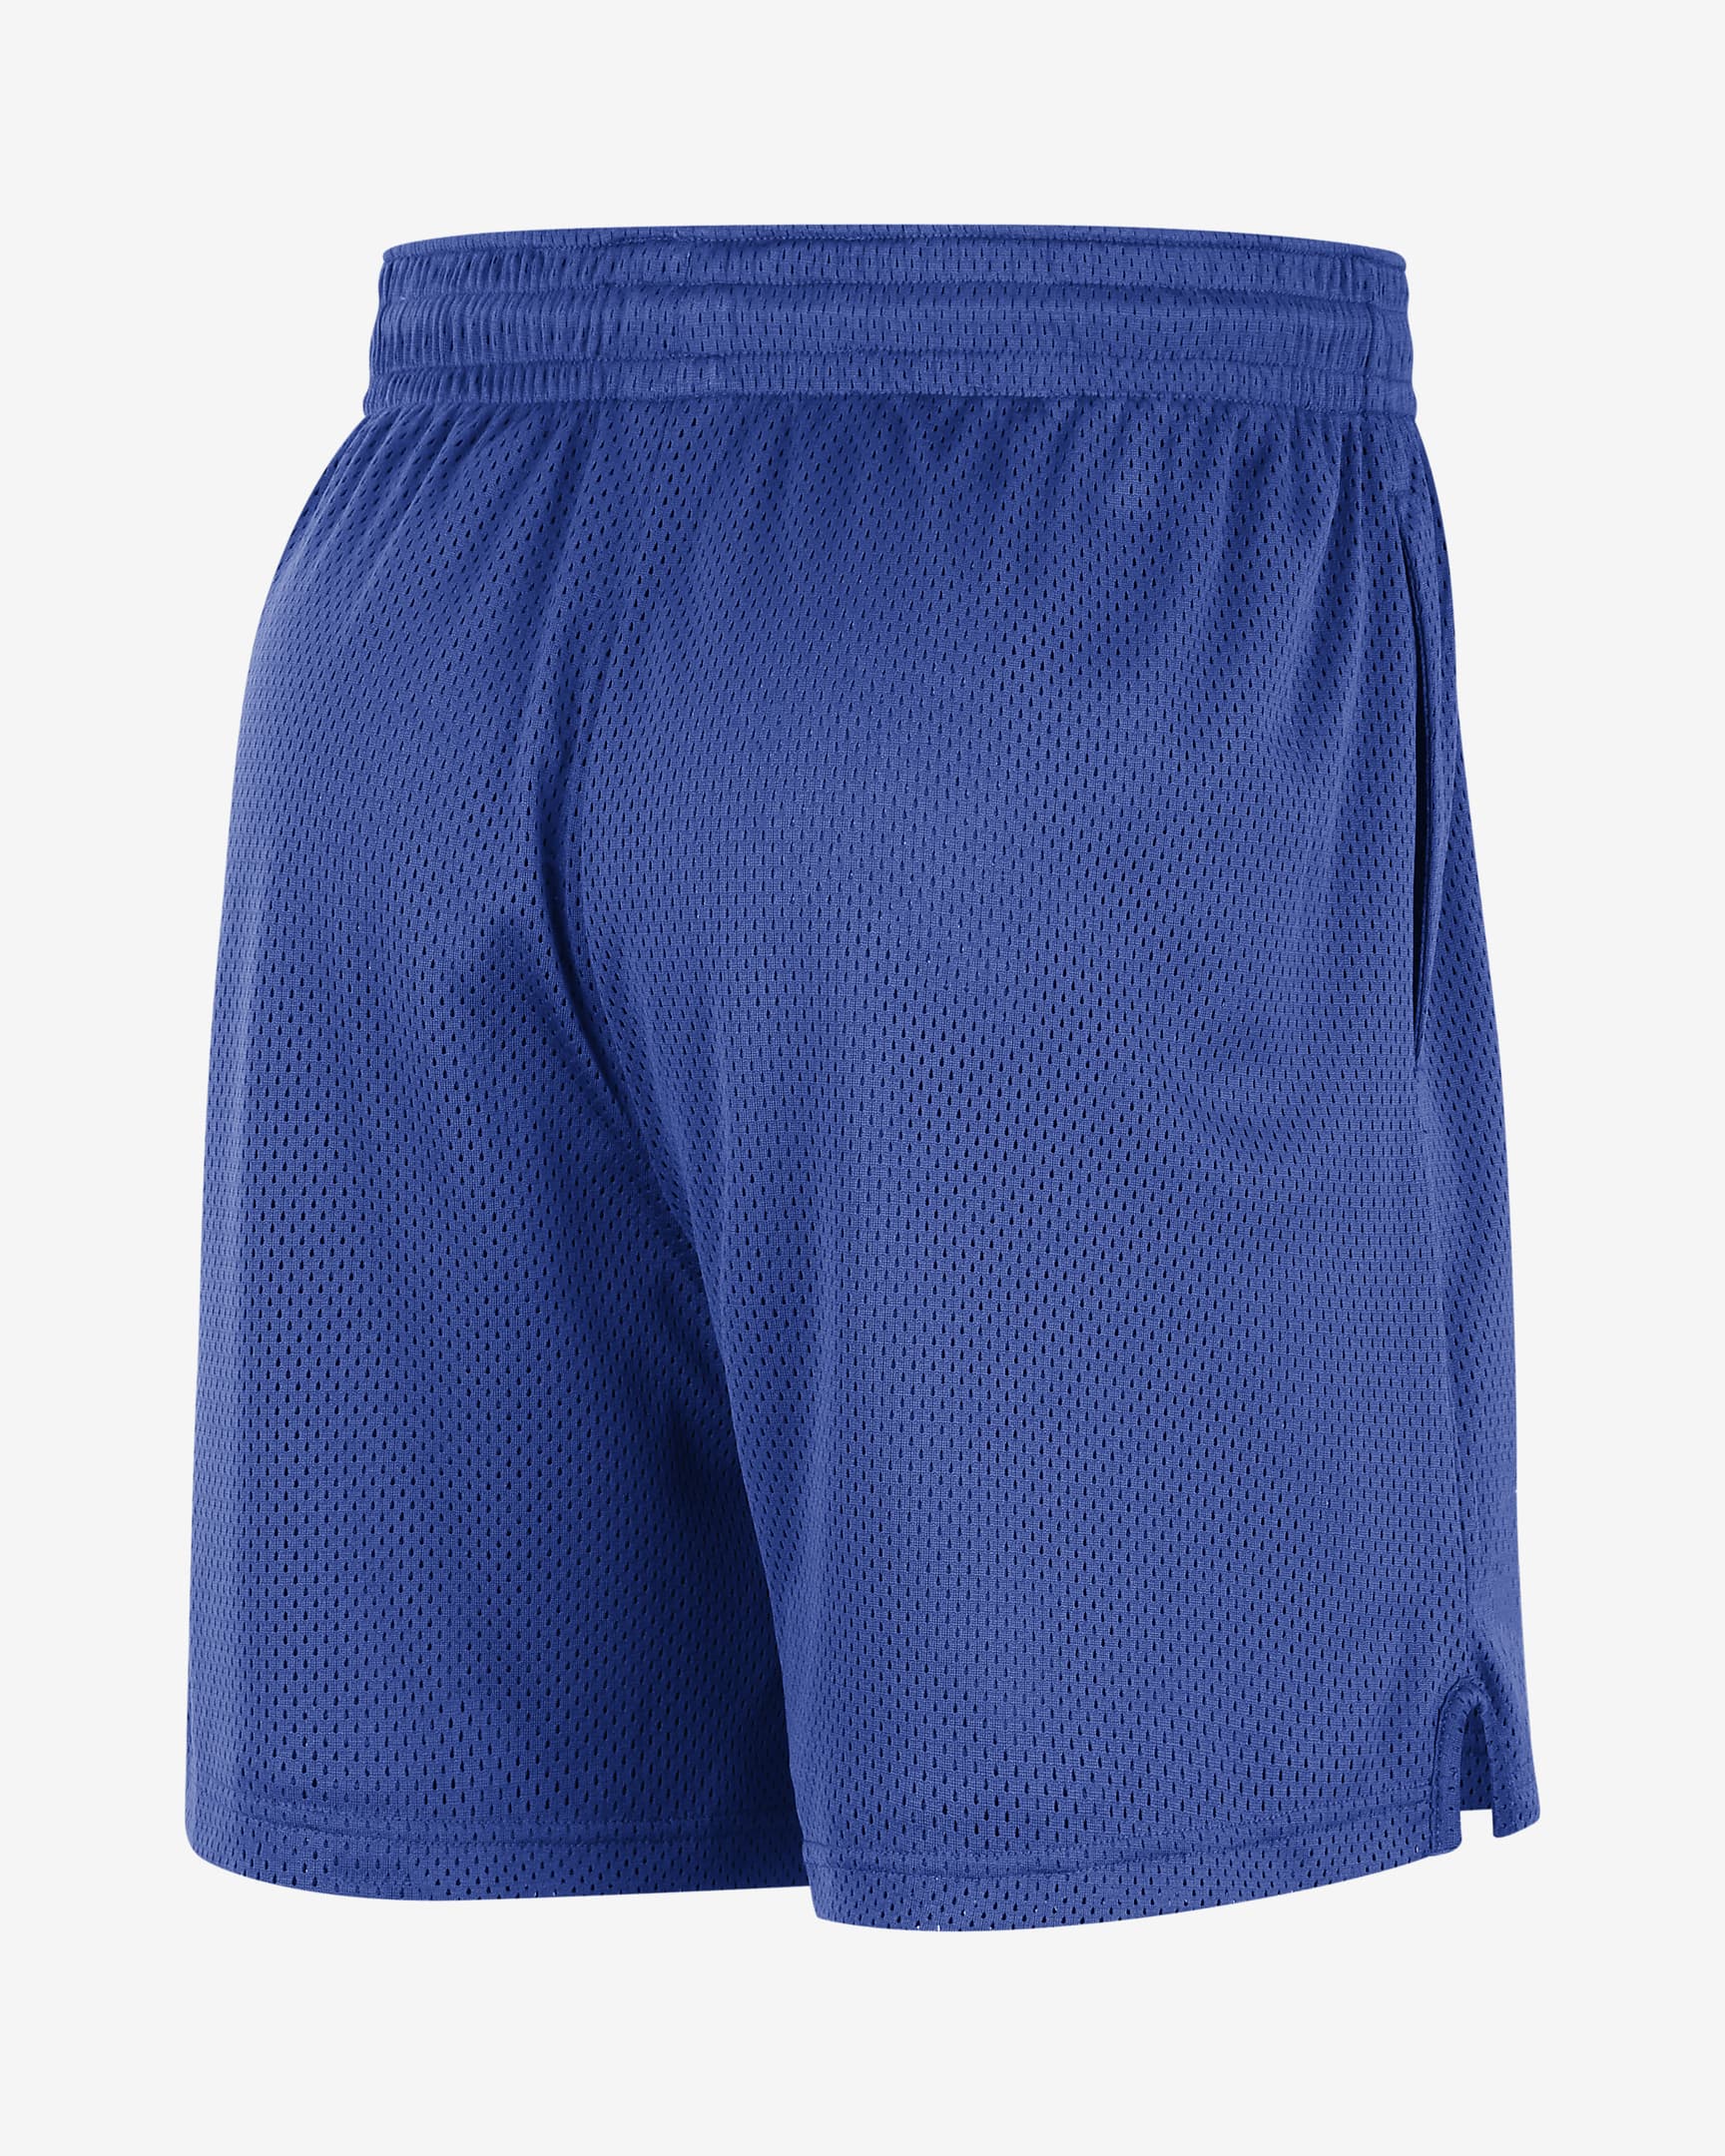 Dallas Mavericks Men's Nike NBA Mesh Shorts. Nike.com